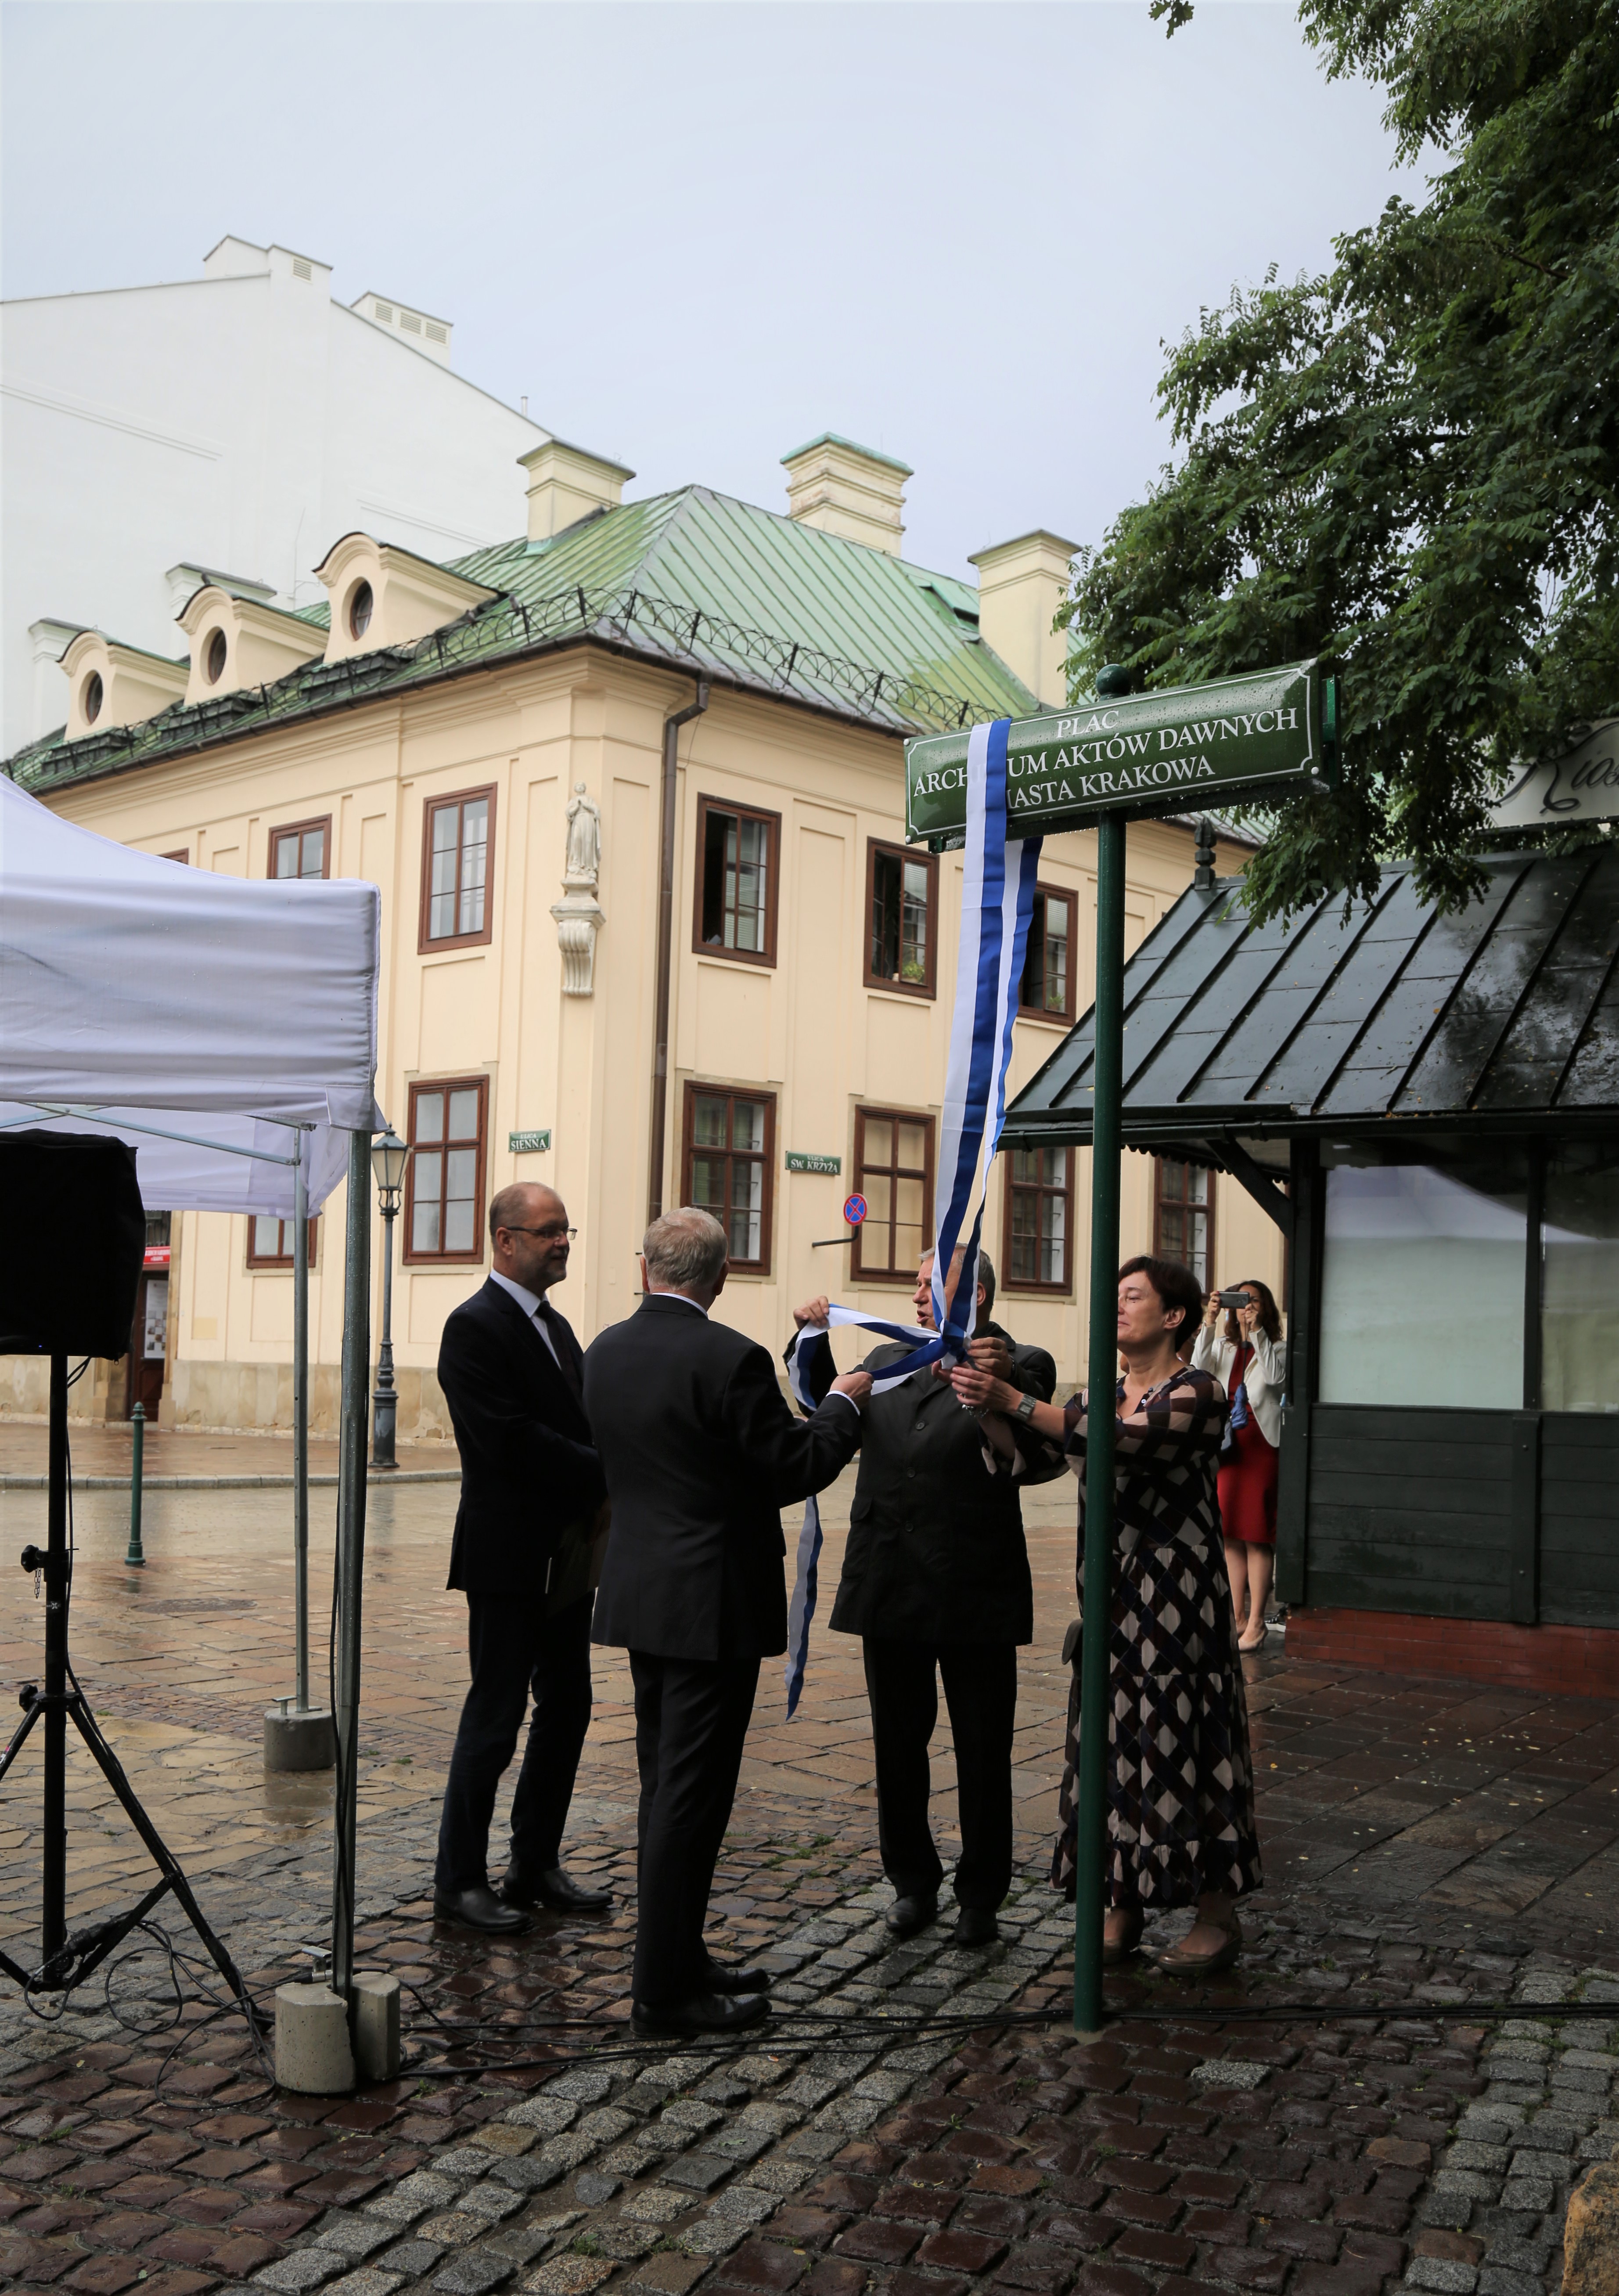 Cztery osoby trzymają biało-niebieską szarfę zawieszoną na tabliczce z nazwą Plac Archiwum Aktów Dawnych Miasta Krakowa.